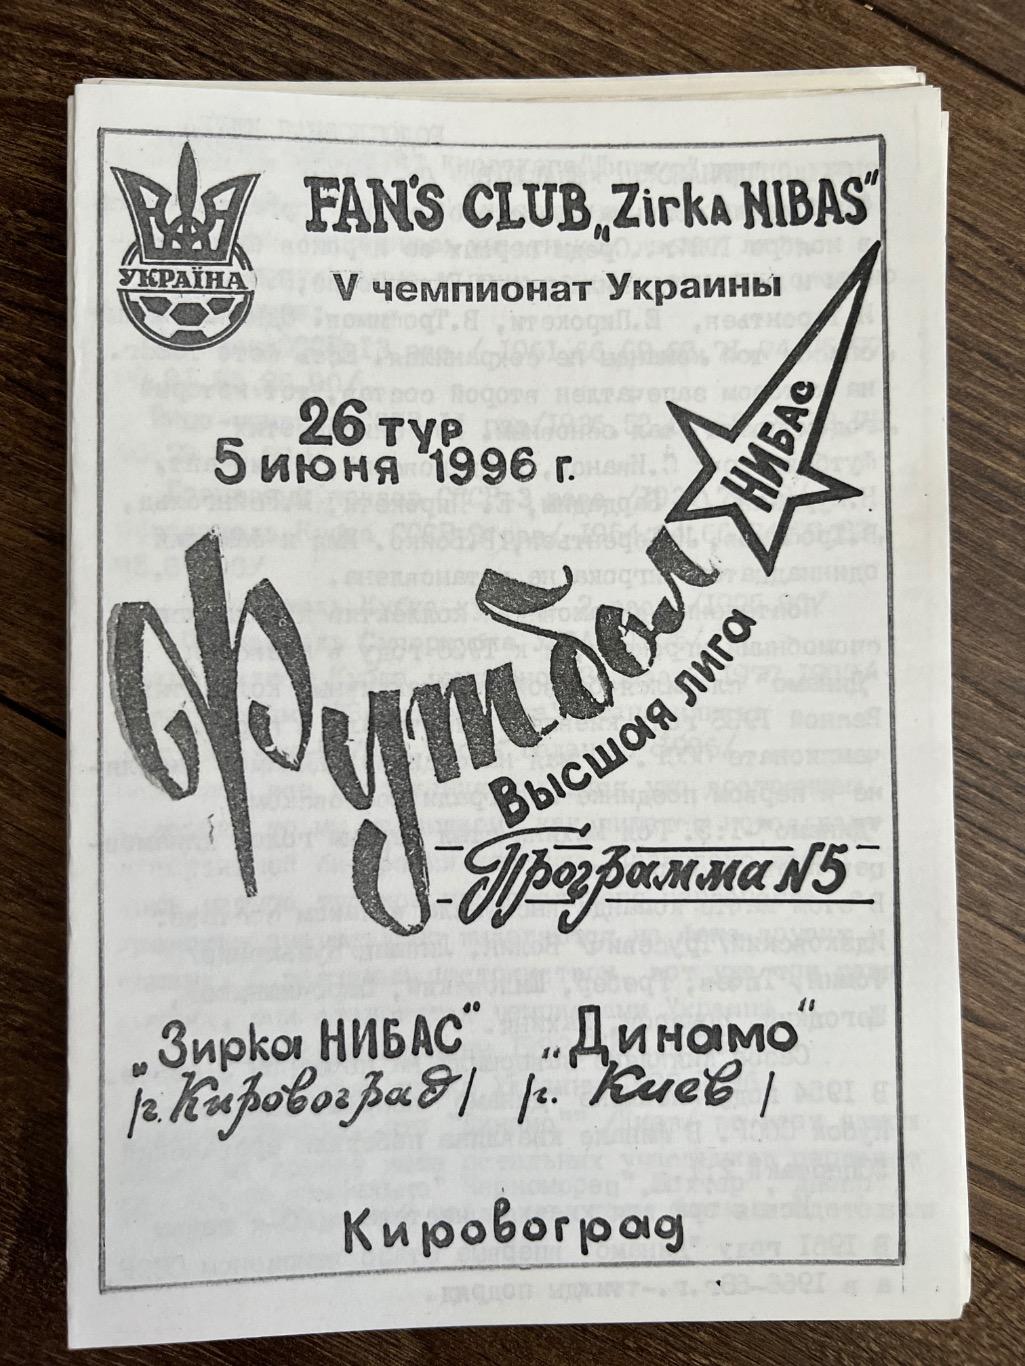 Звезда Кировоград - Динамо Киев 1995-1996 фан